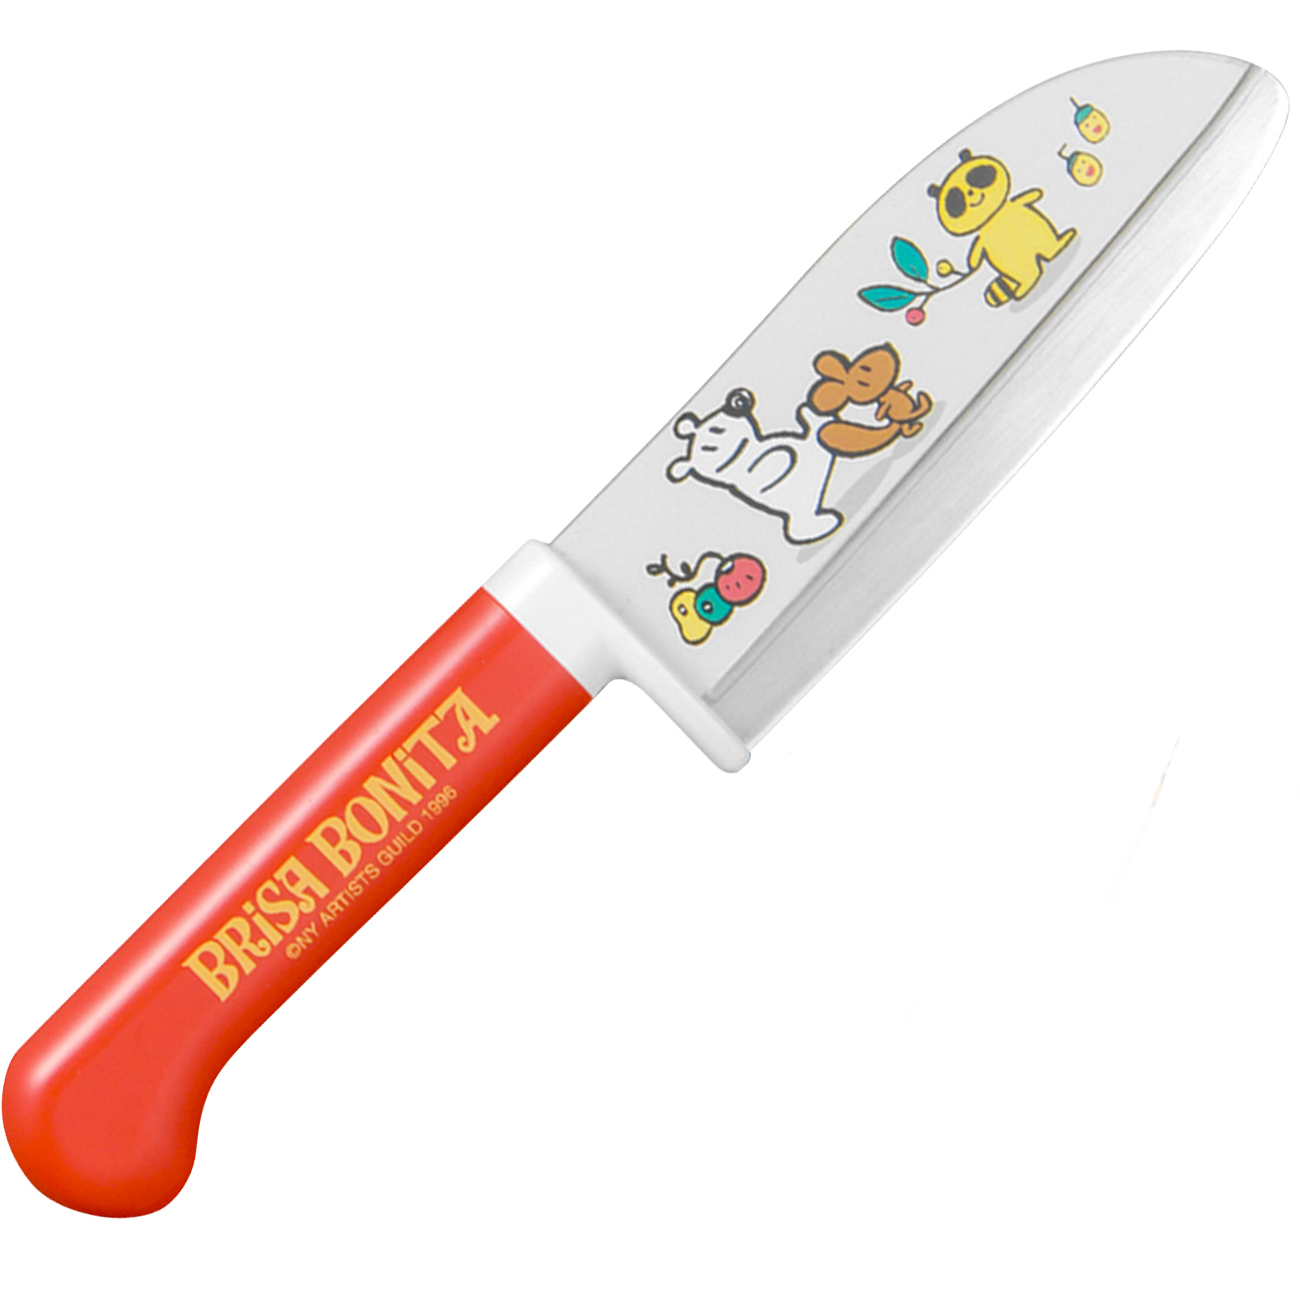 Детский сад нож. Brisa Bonita нож. Brisa Bonita детский нож. Ножик для детей. Нож для дошкольников.